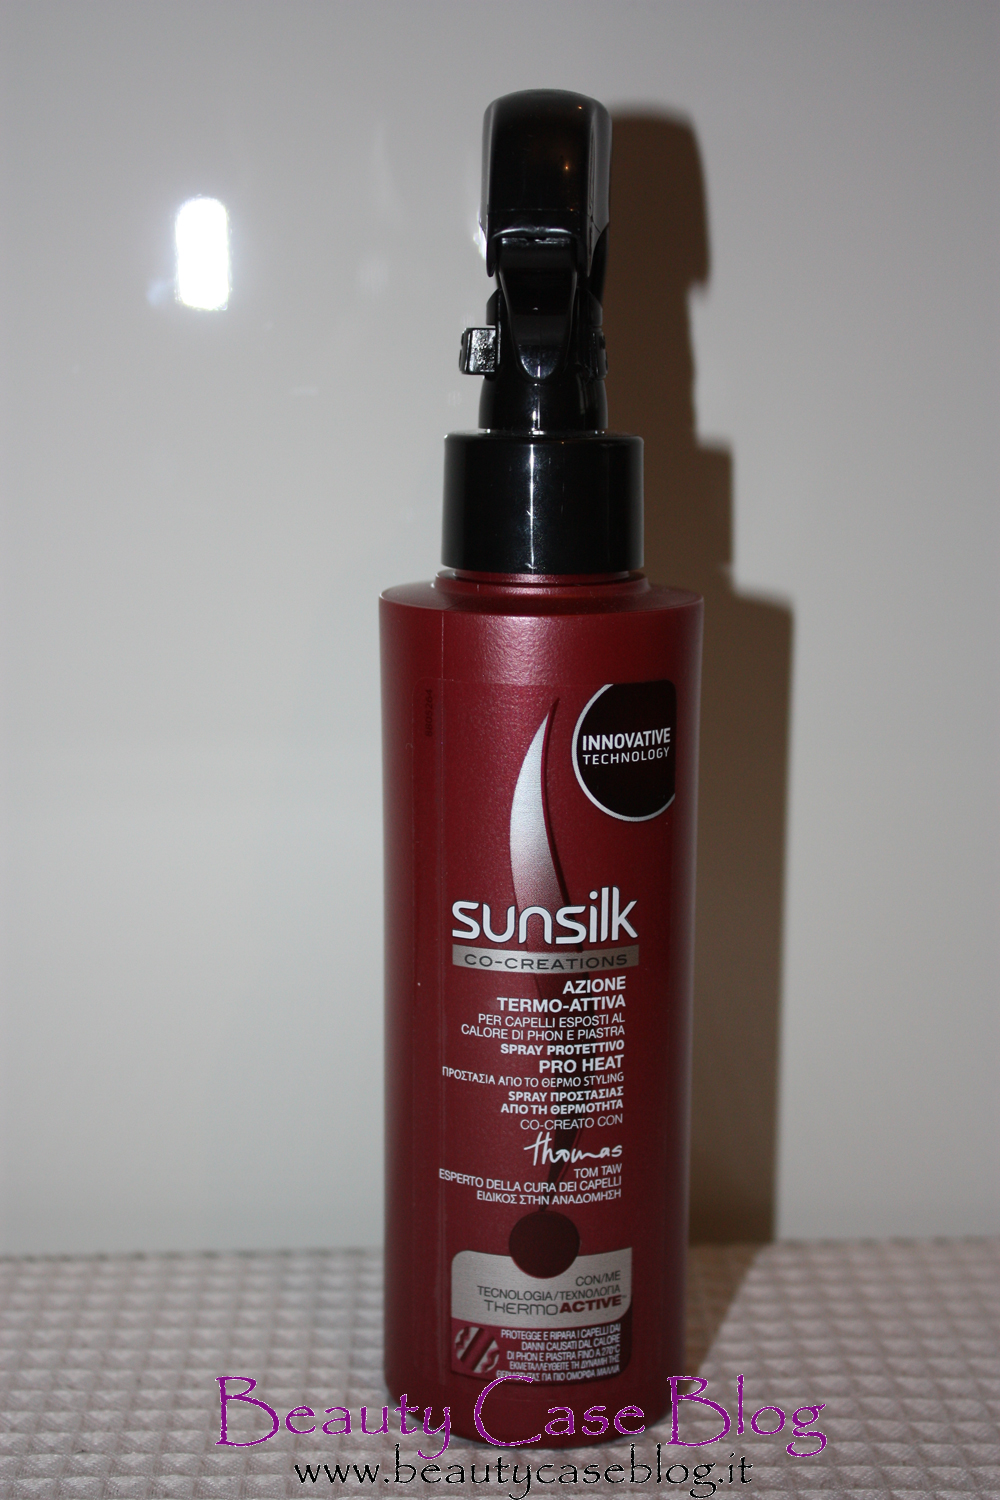 Sunsilk - Spray Protettivo Linea Azione Termo-Attiva - Beauty Case